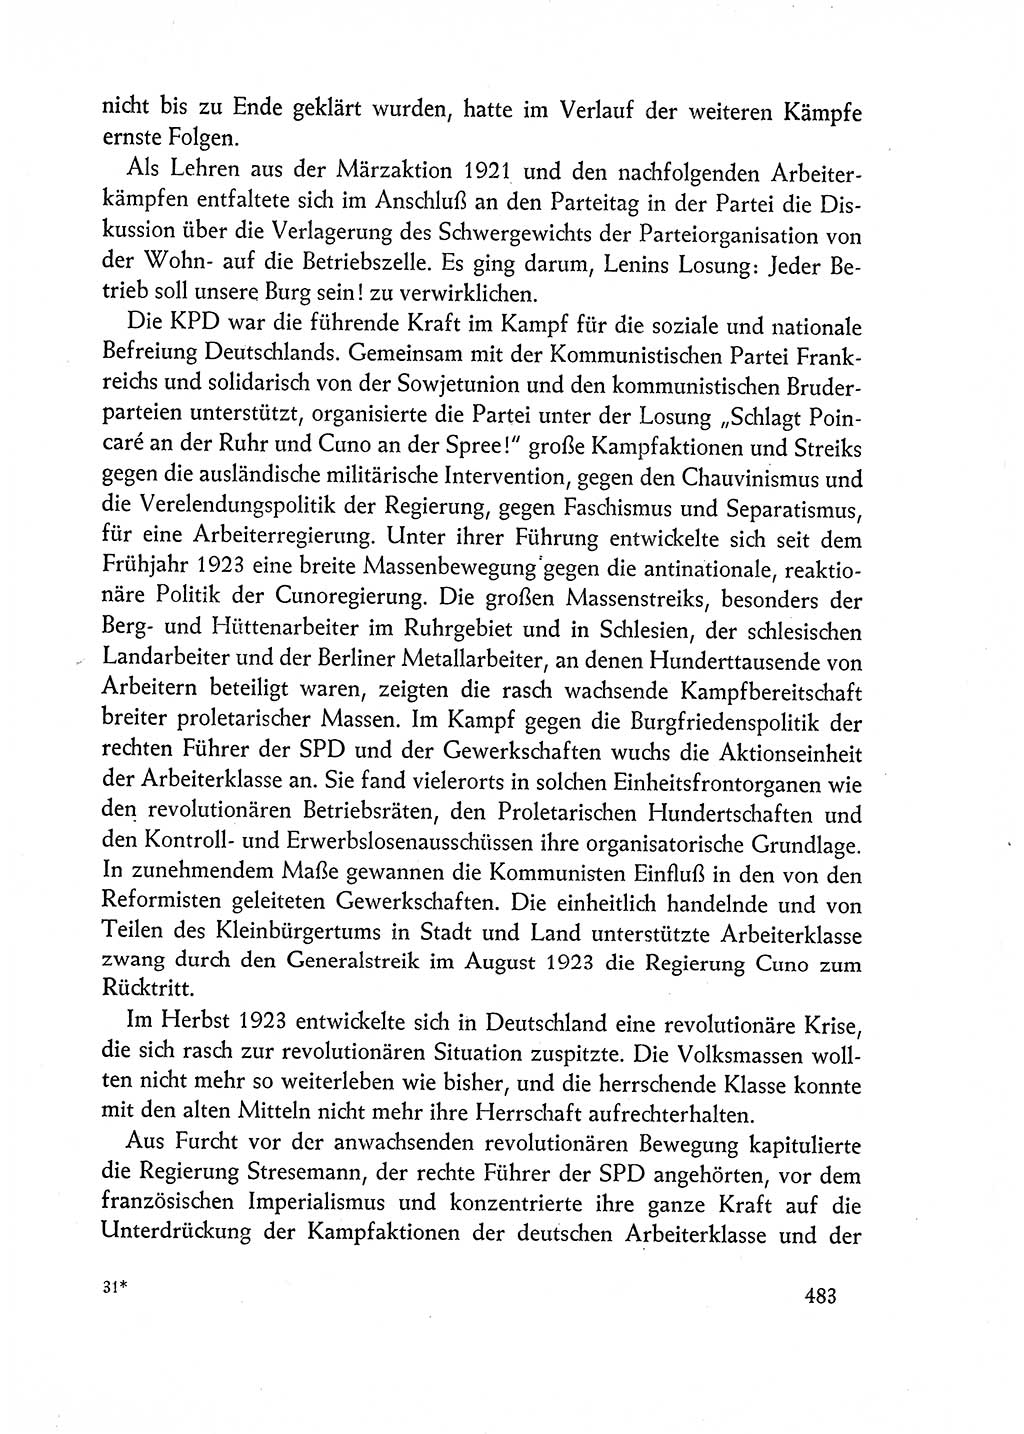 Dokumente der Sozialistischen Einheitspartei Deutschlands (SED) [Deutsche Demokratische Republik (DDR)] 1962-1963, Seite 483 (Dok. SED DDR 1962-1963, S. 483)